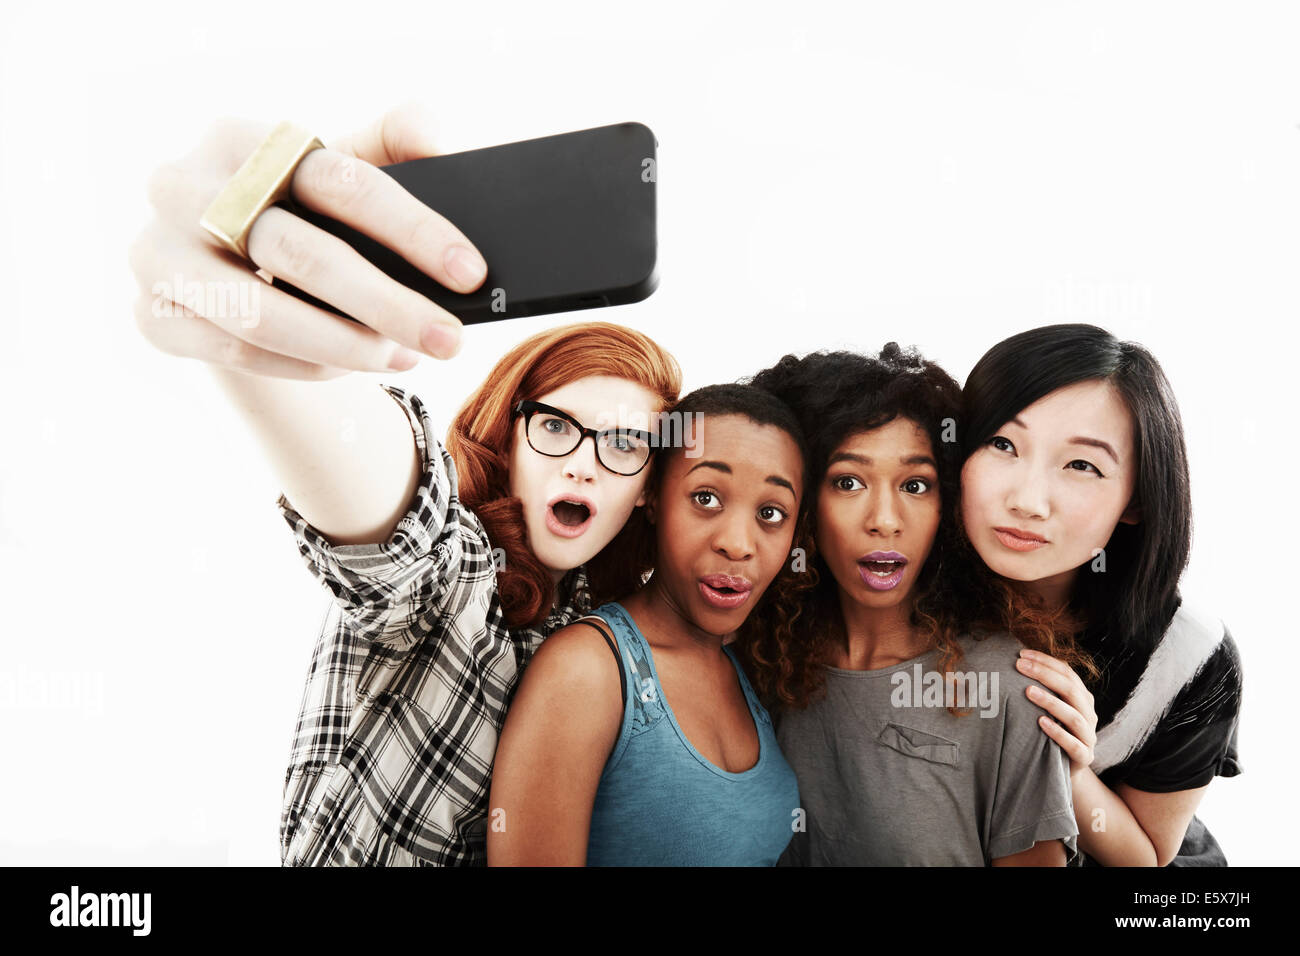 Ritratto in studio di quattro giovani donne che assumono selfie sullo smartphone Foto Stock